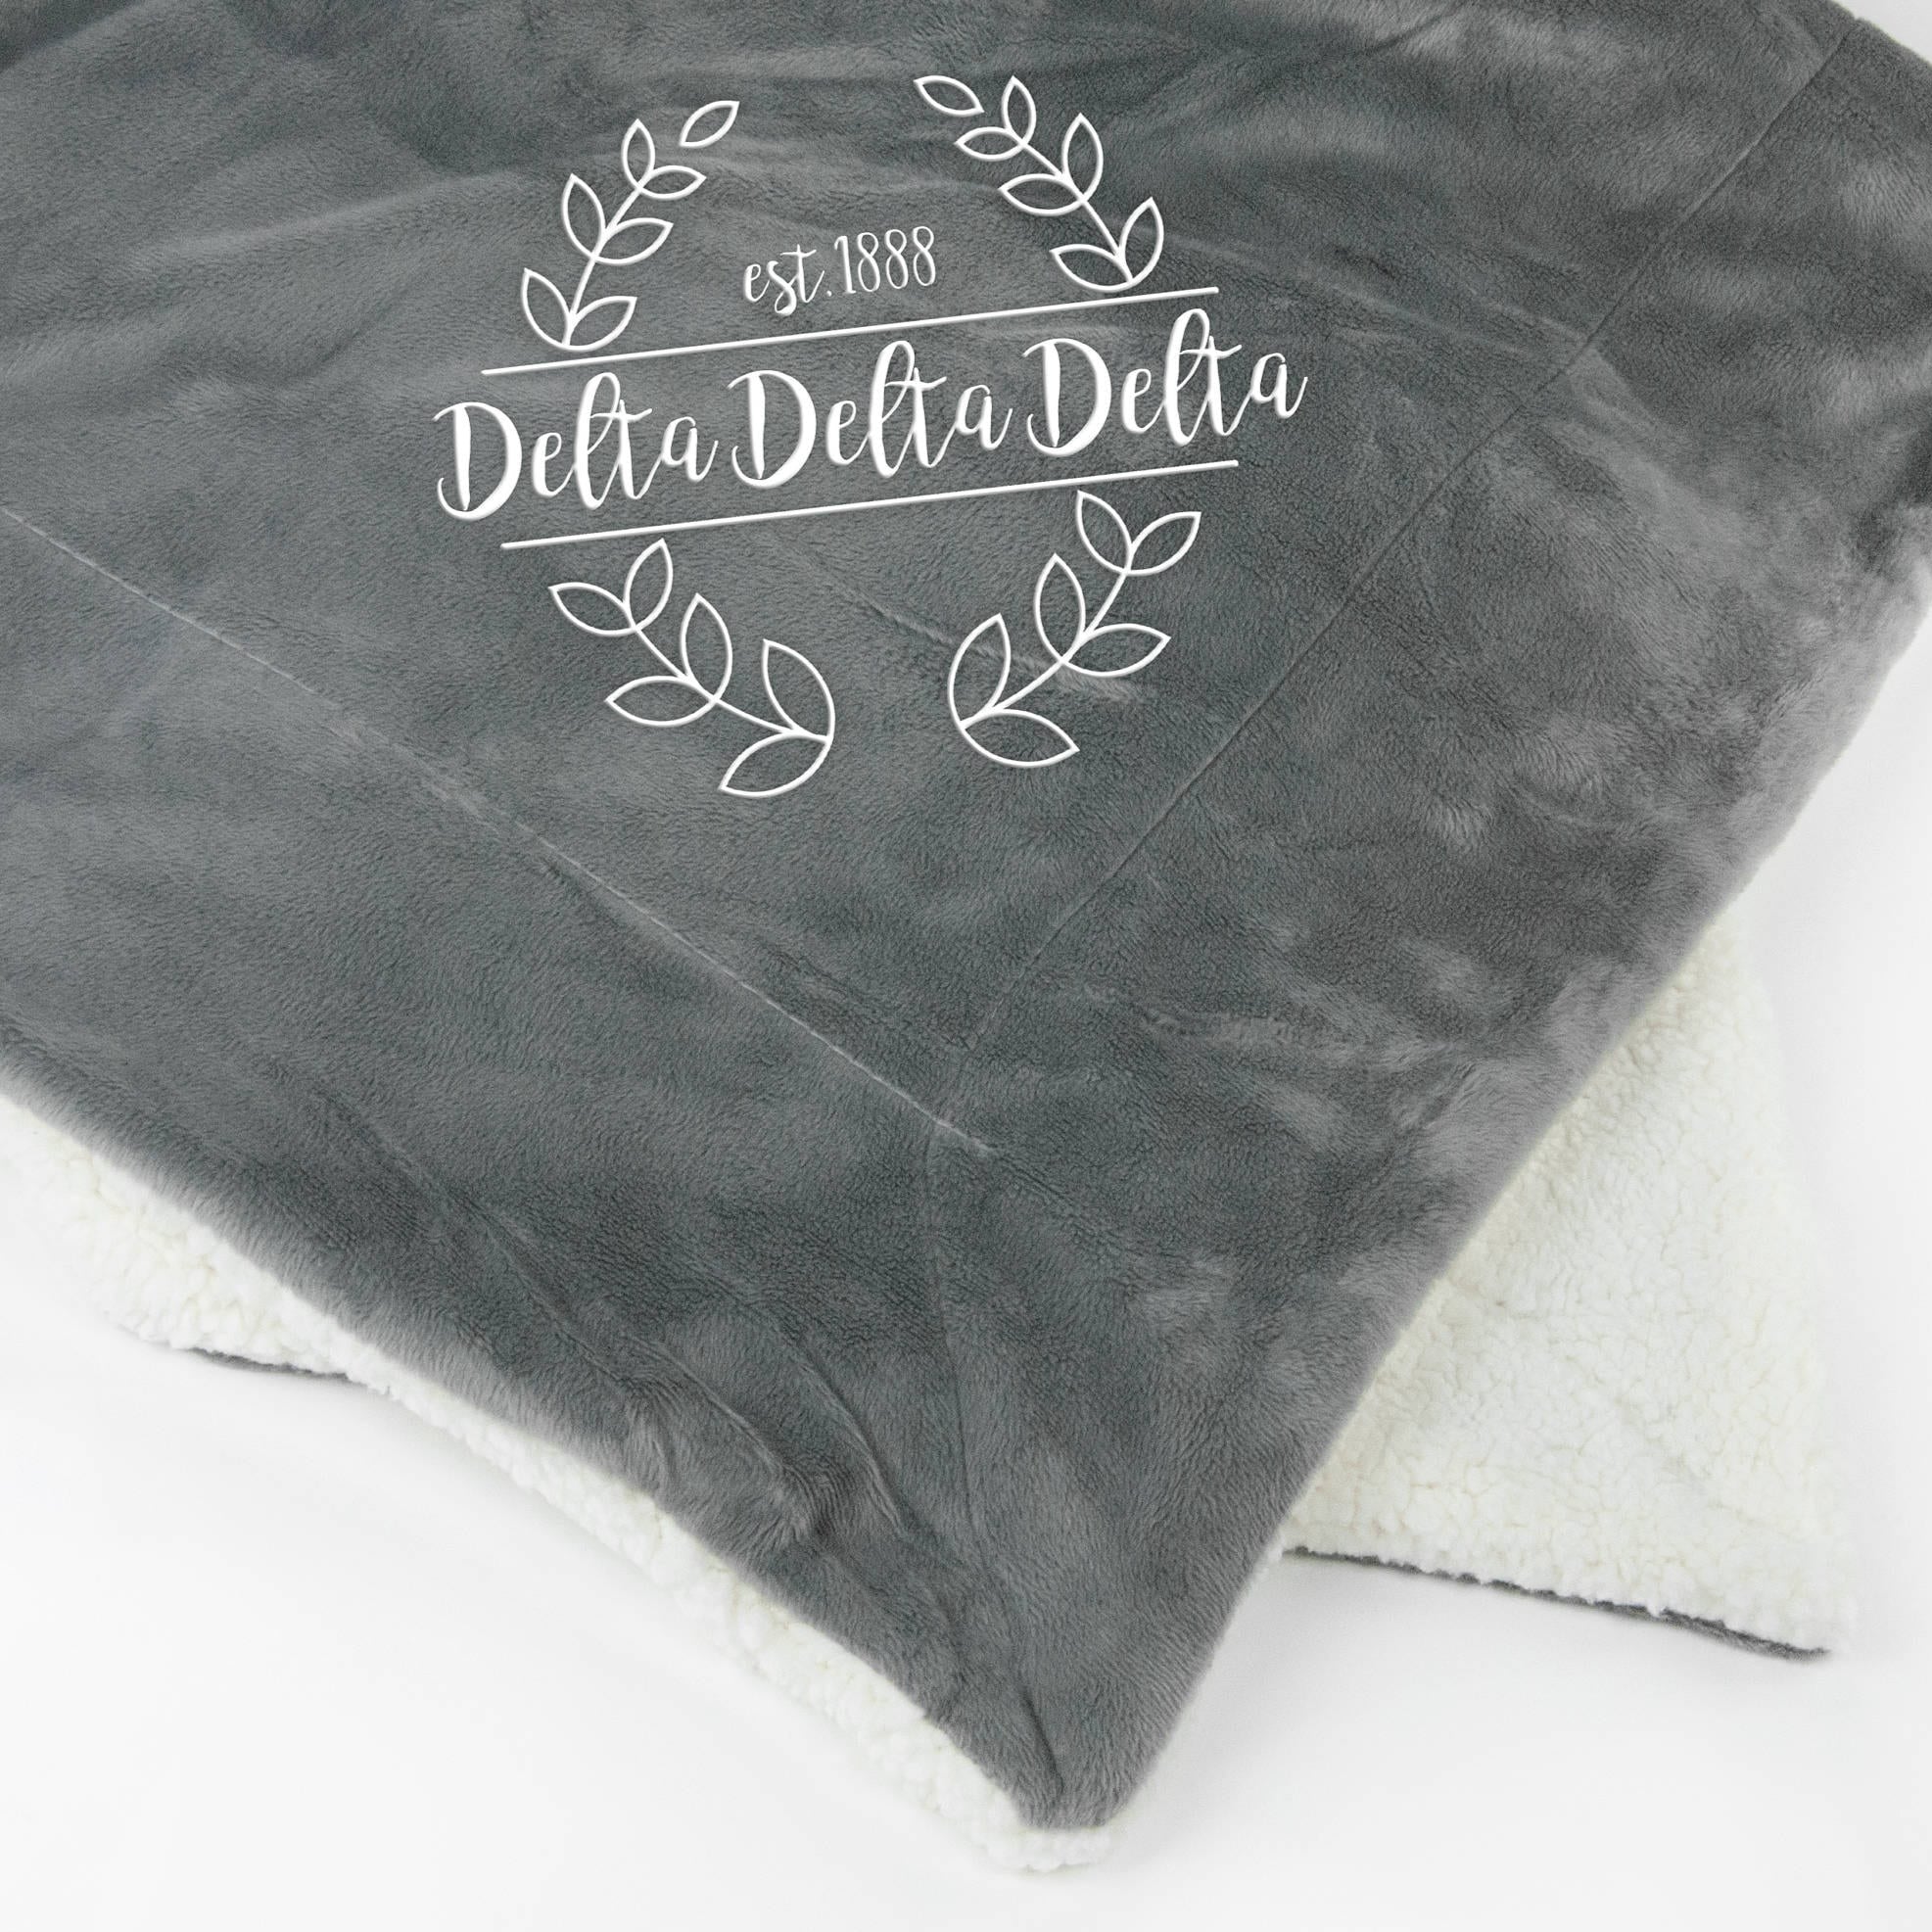 Delta Delta Delta Laurel Sherpa Throw Blanket - Go Greek Chic